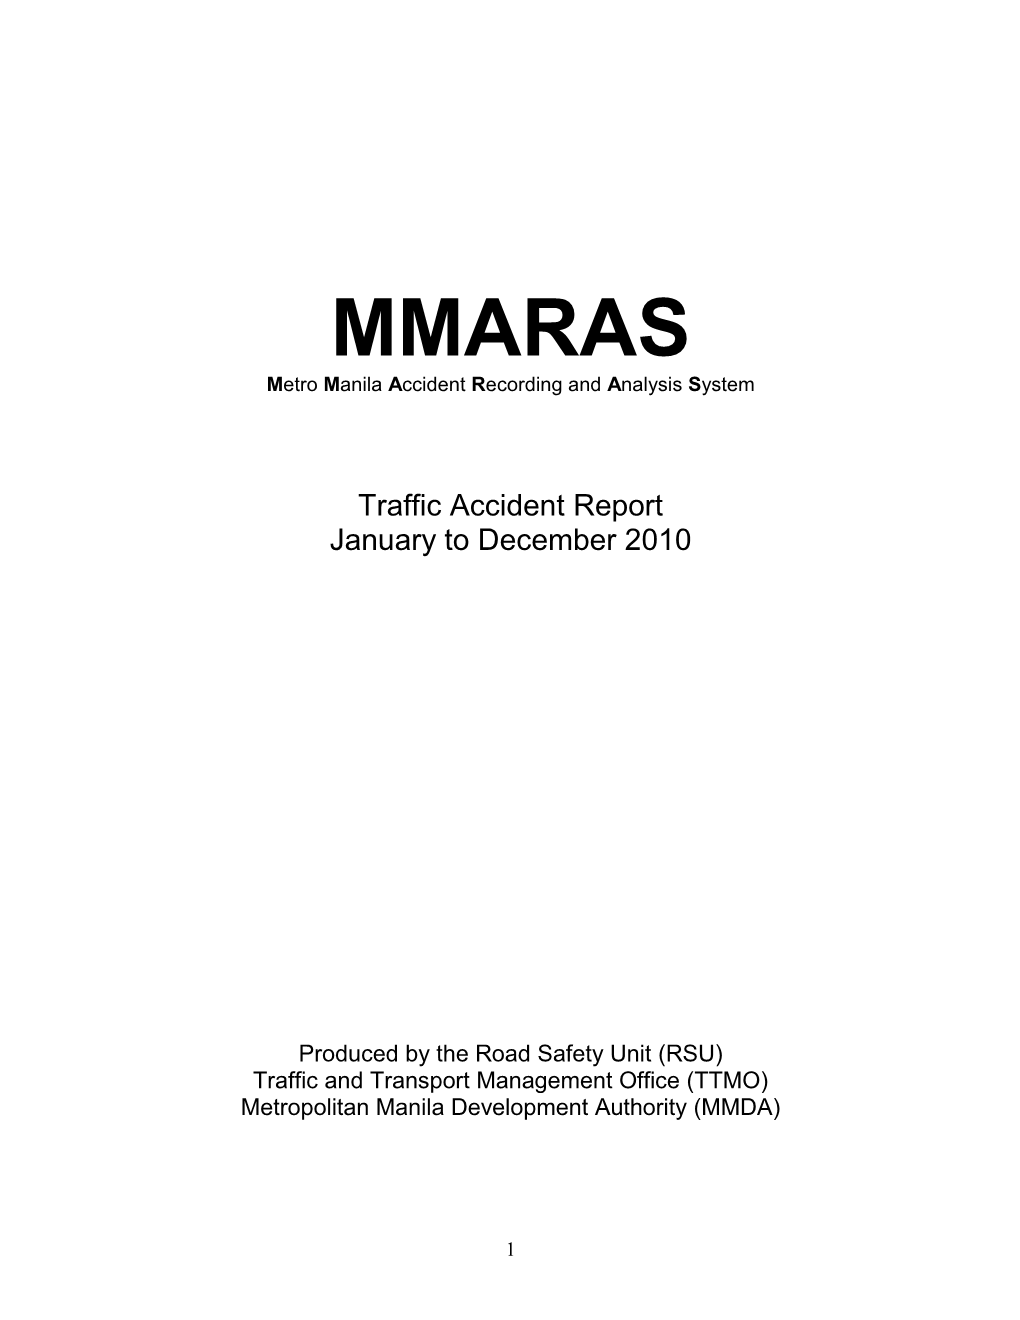 MMARAS Annual Report 2010